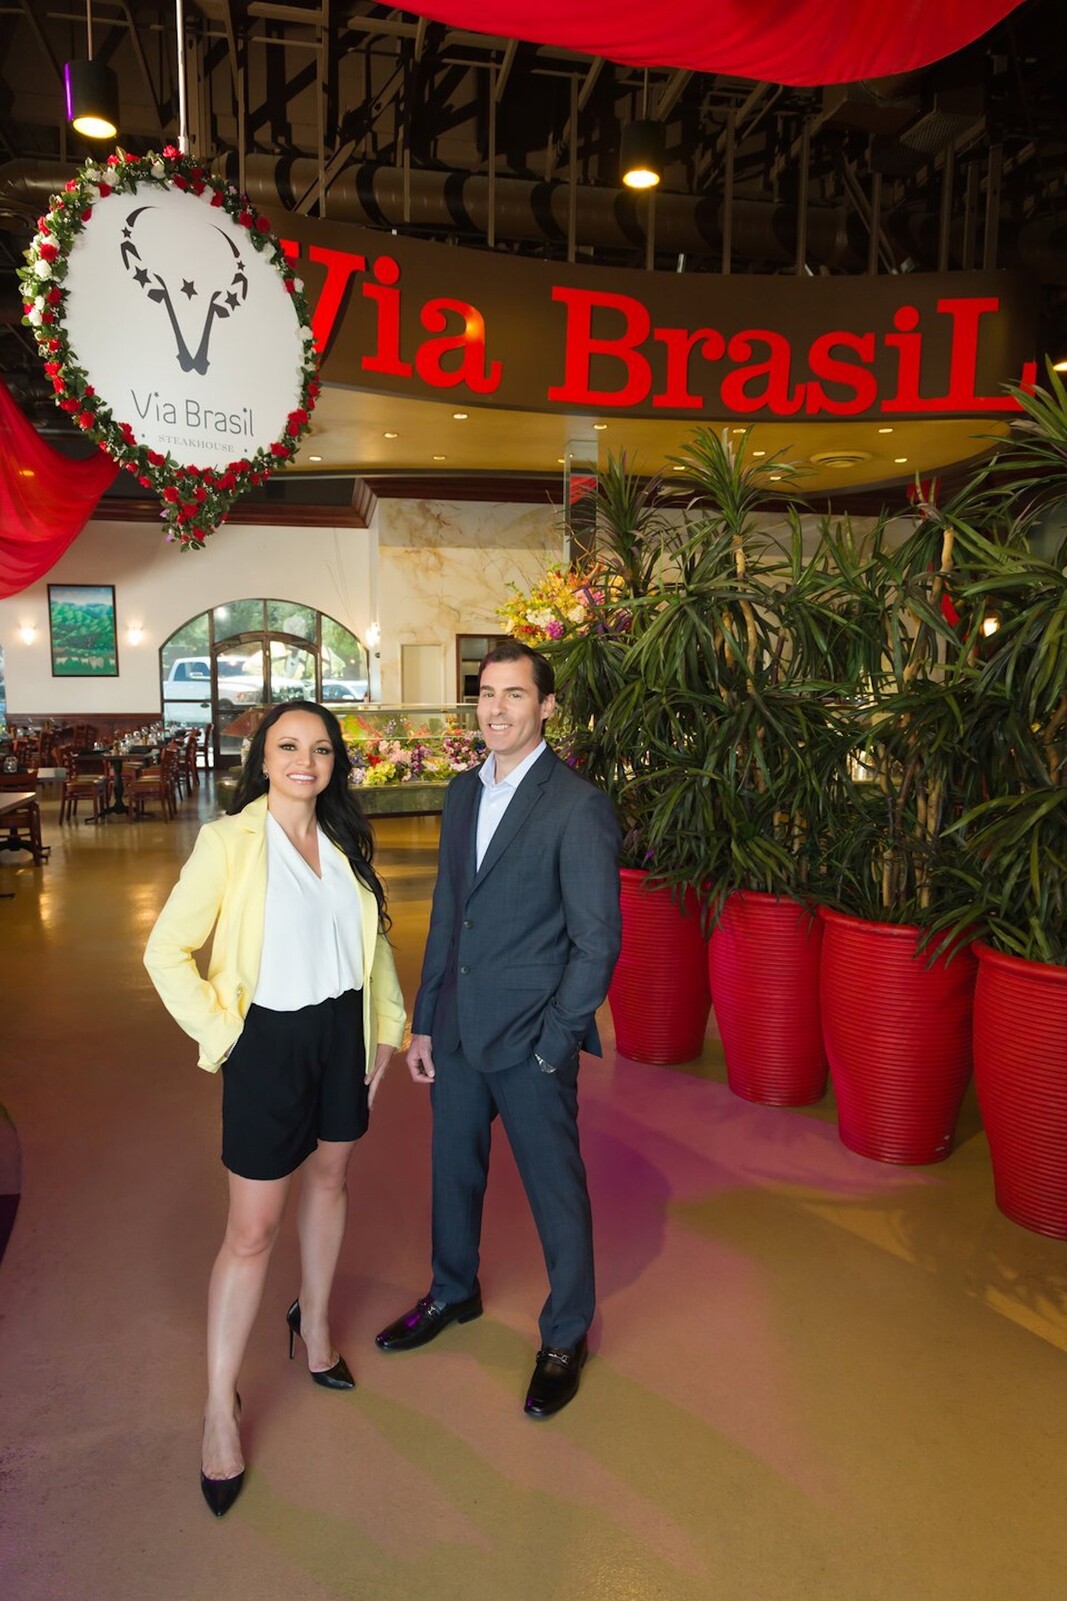 Via Brasil Steakhouse Celebrates 15th Anniversary: Owner Anna Gomes Shares  Journey on 'Las Vegas Now' - Via Brasil Steakhouse